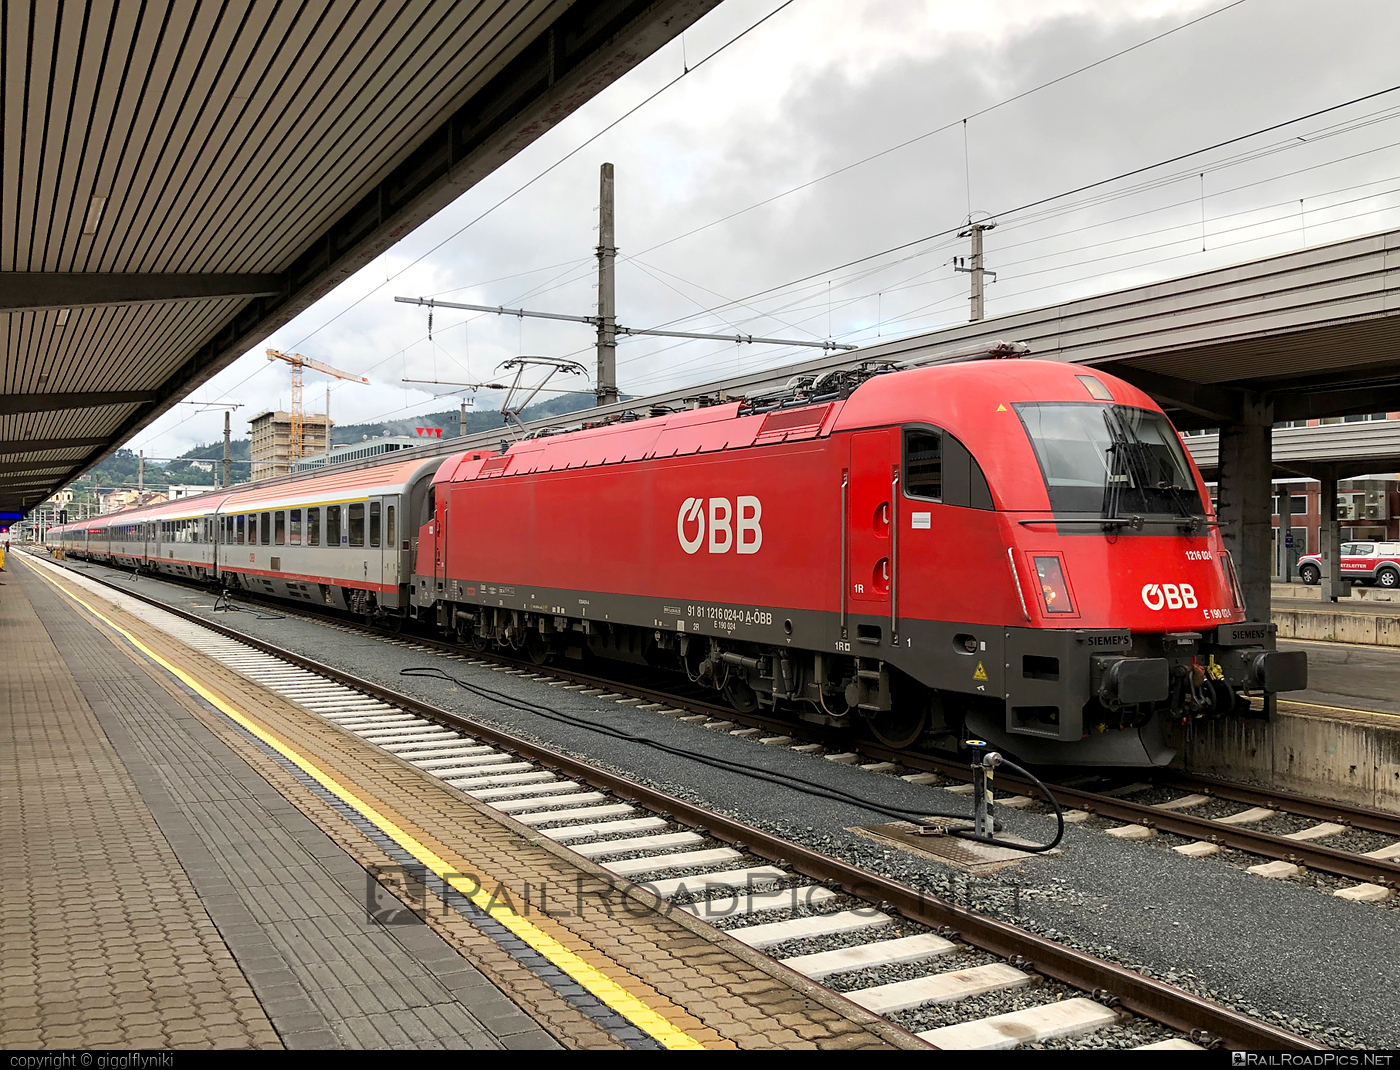 Siemens ES 64 U4 - 1216 024 operated by Österreichische Bundesbahnen #es64 #es64u4 #eurosprinter #obb #osterreichischebundesbahnen #siemens #siemensEs64 #siemensEs64u4 #siemenstaurus #taurus #tauruslocomotive